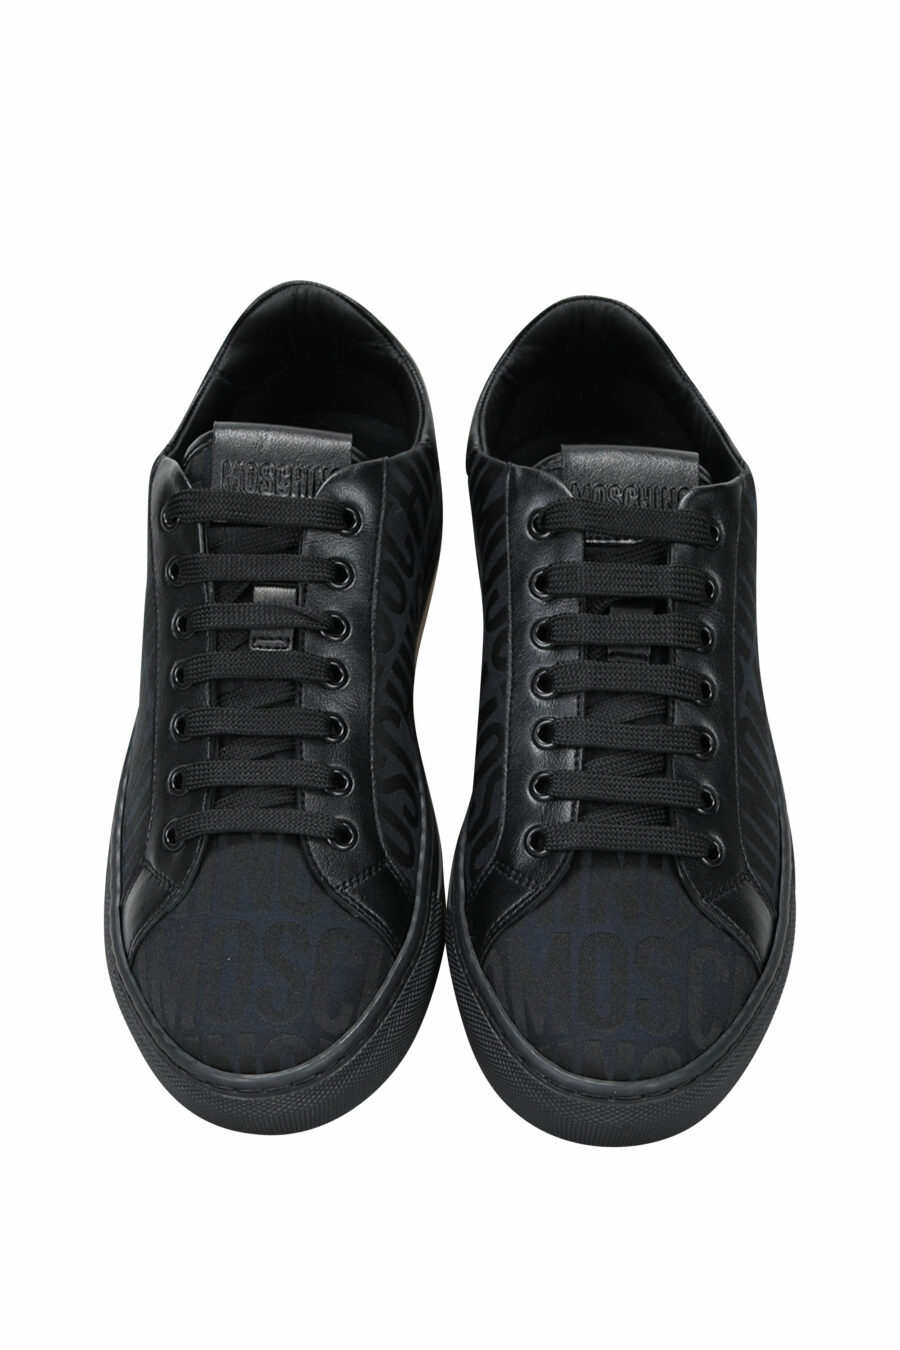 Zapatillas negras "all over logo" con suela negra - 8054653827714 4